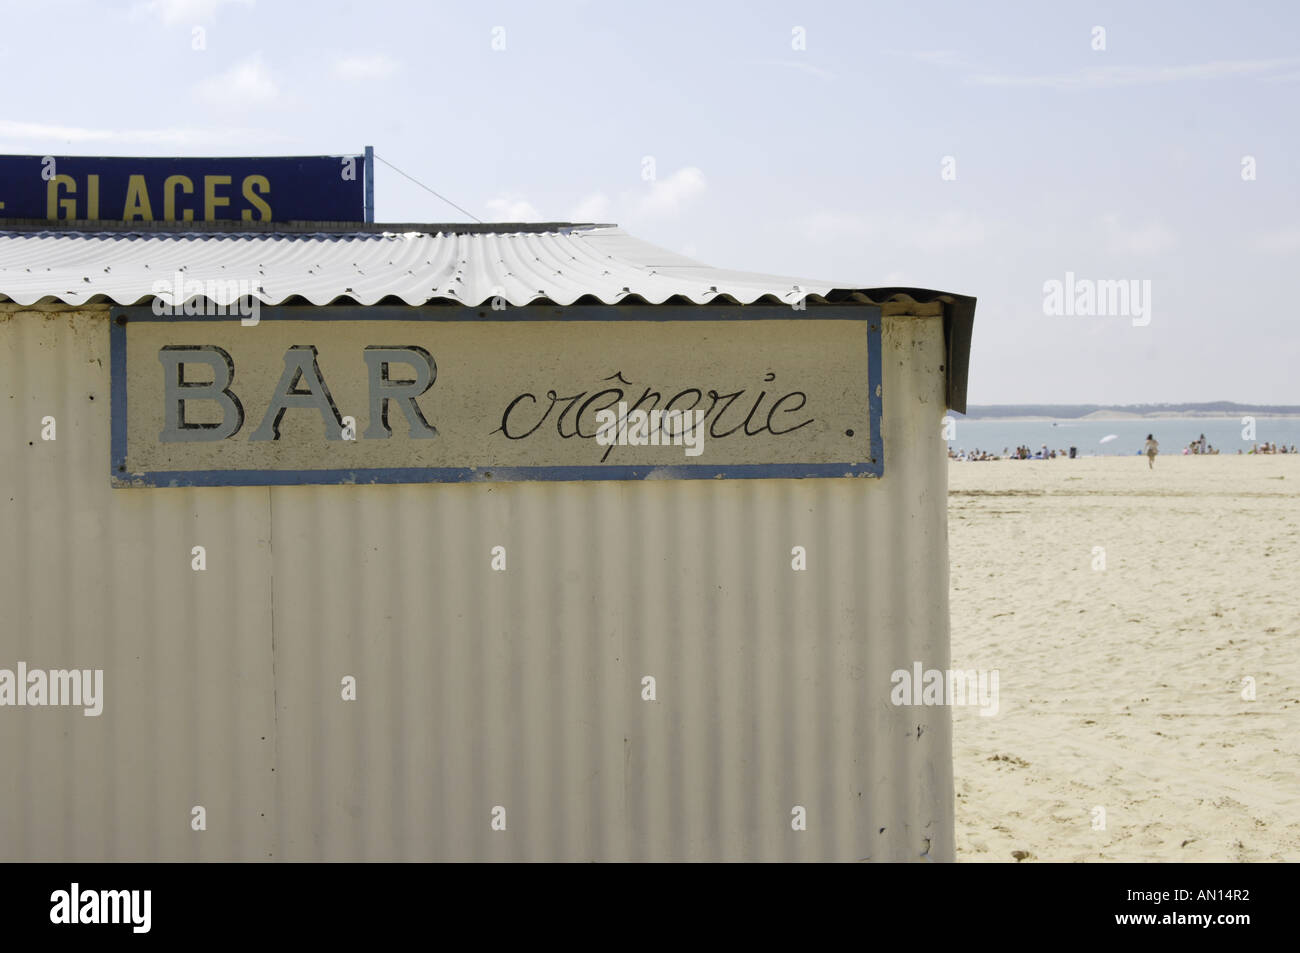 Ristorante beach bar creperia costa mare costiero tradizionale tipica ile d'Oleron oleron Charente maritime francia - francese fran Foto Stock